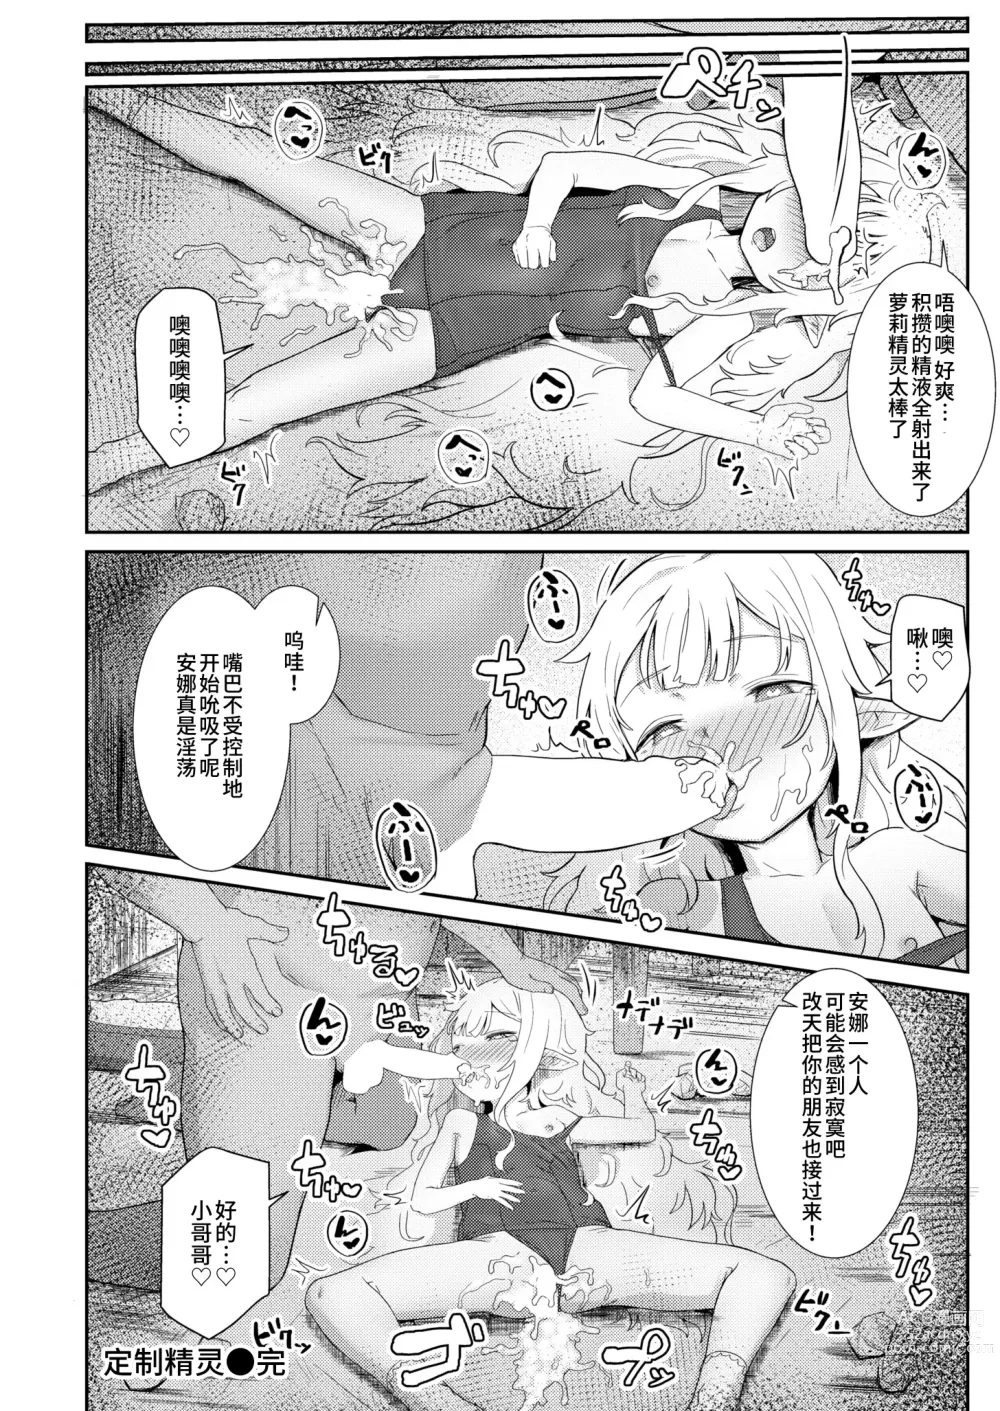 Page 24 of manga Custom Elf